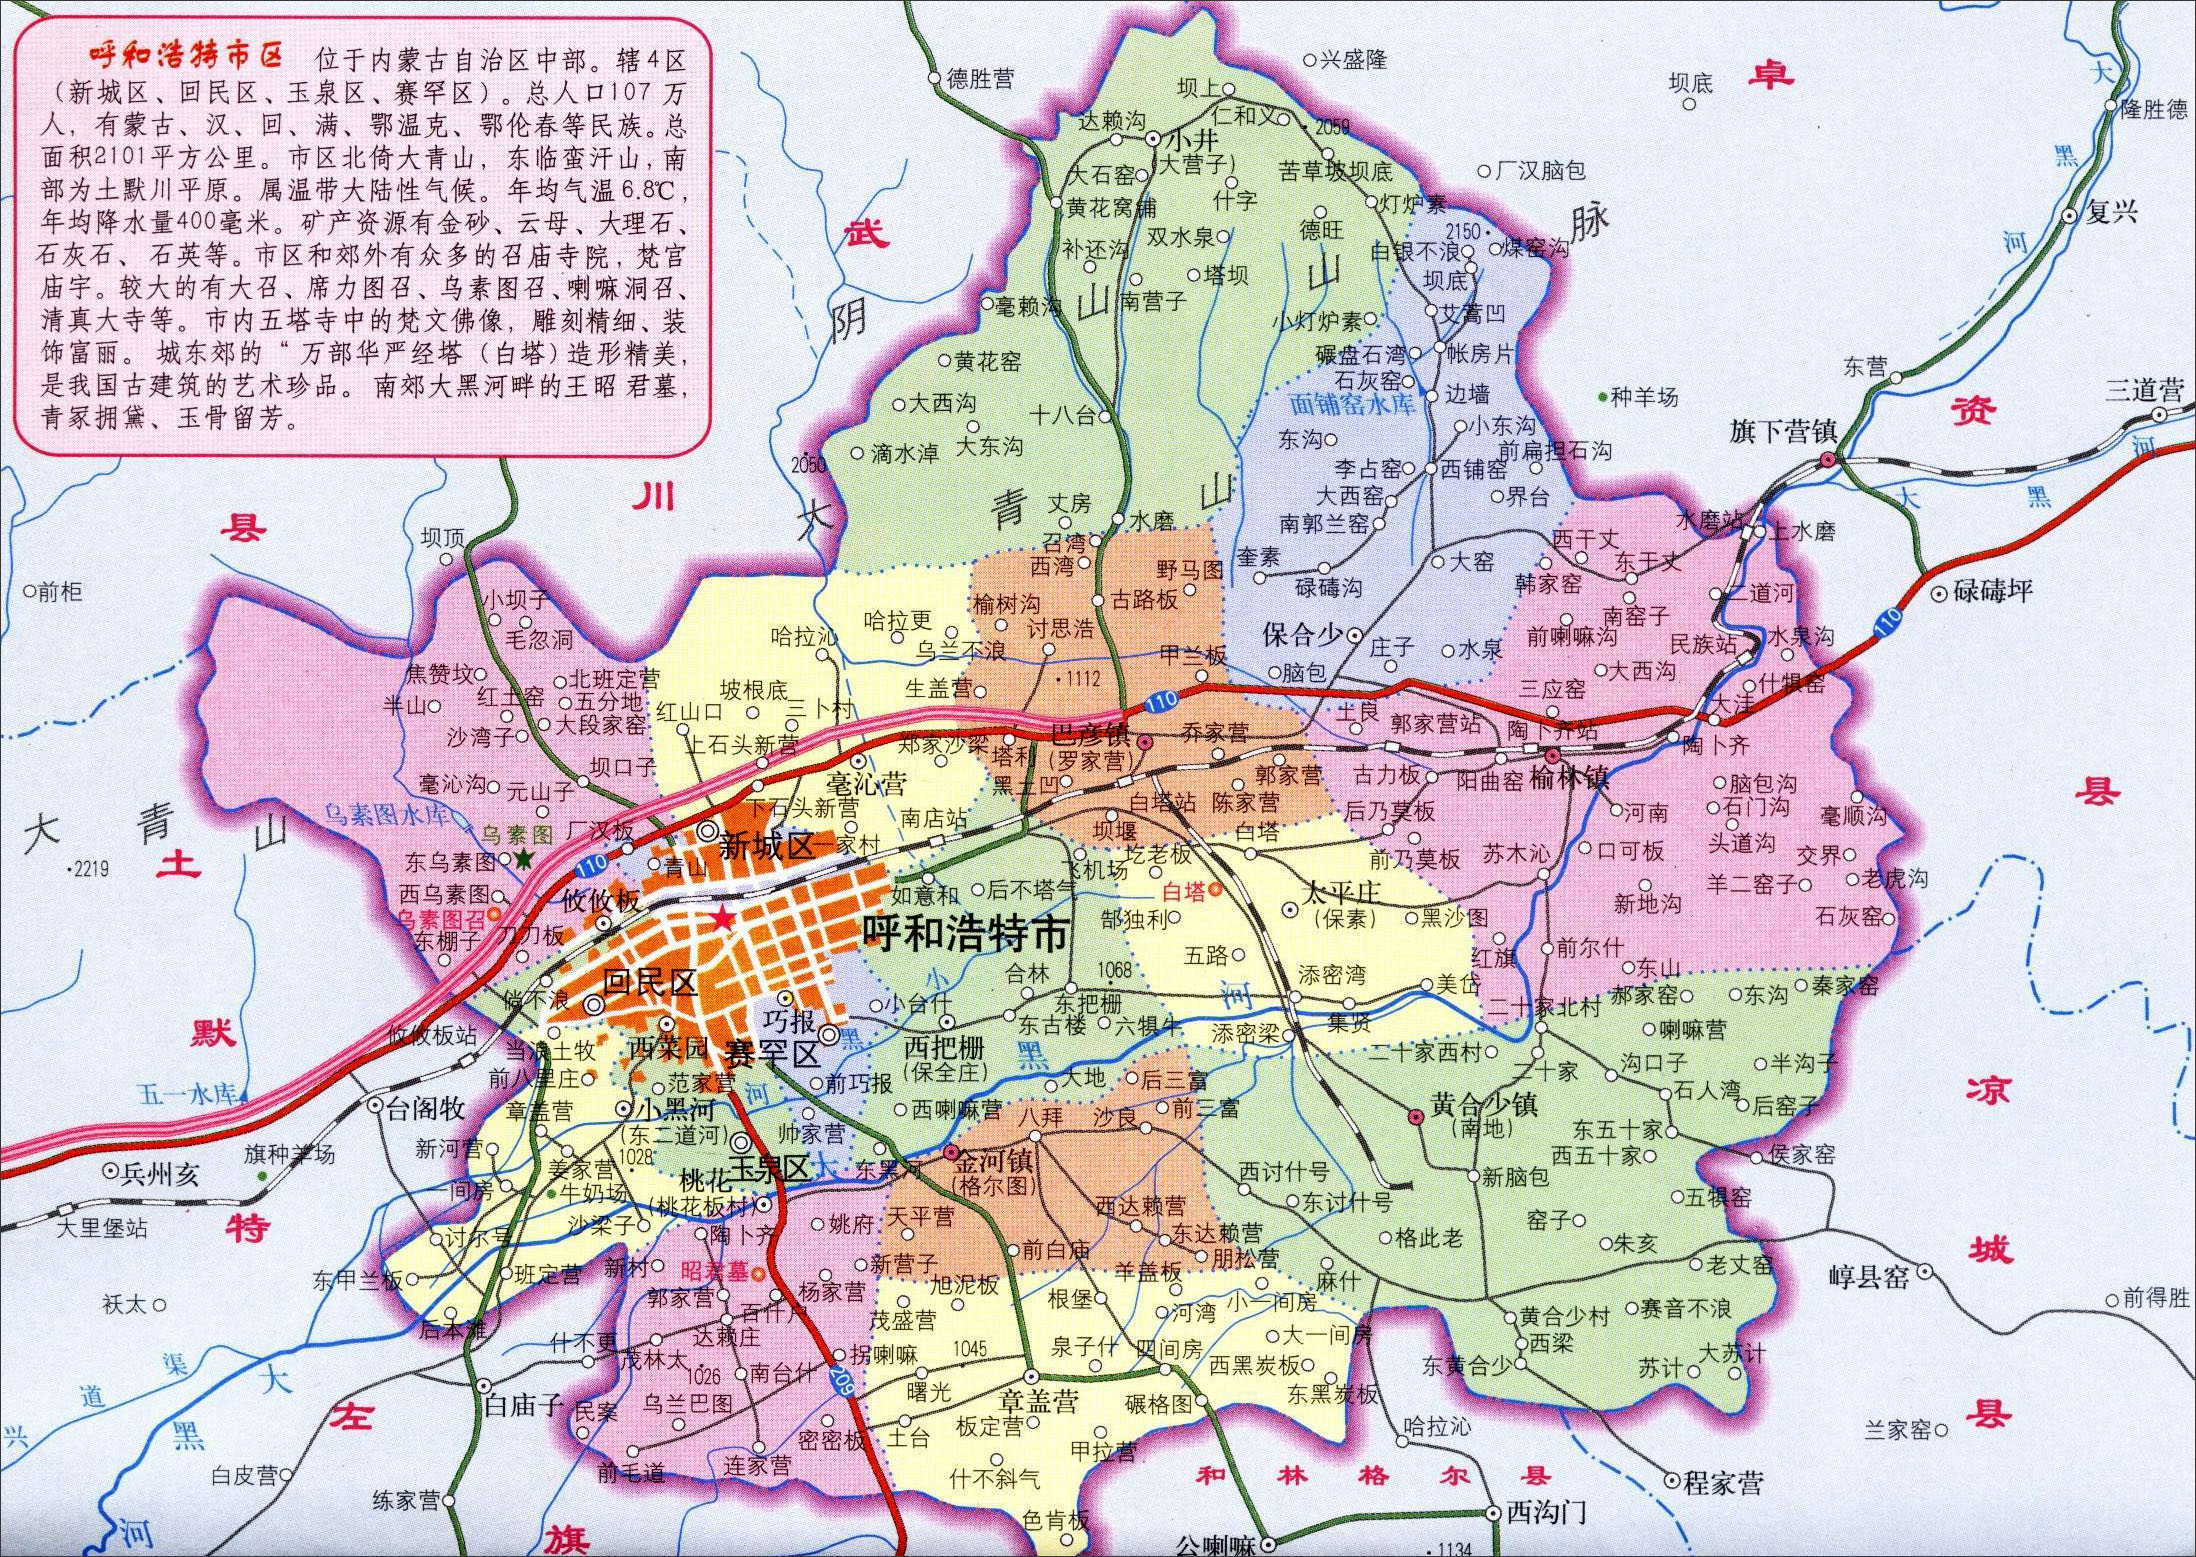 市  兴安盟  锡林郭勒盟  多伦阿拉善盟 上一幅地图: 呼和浩特城区